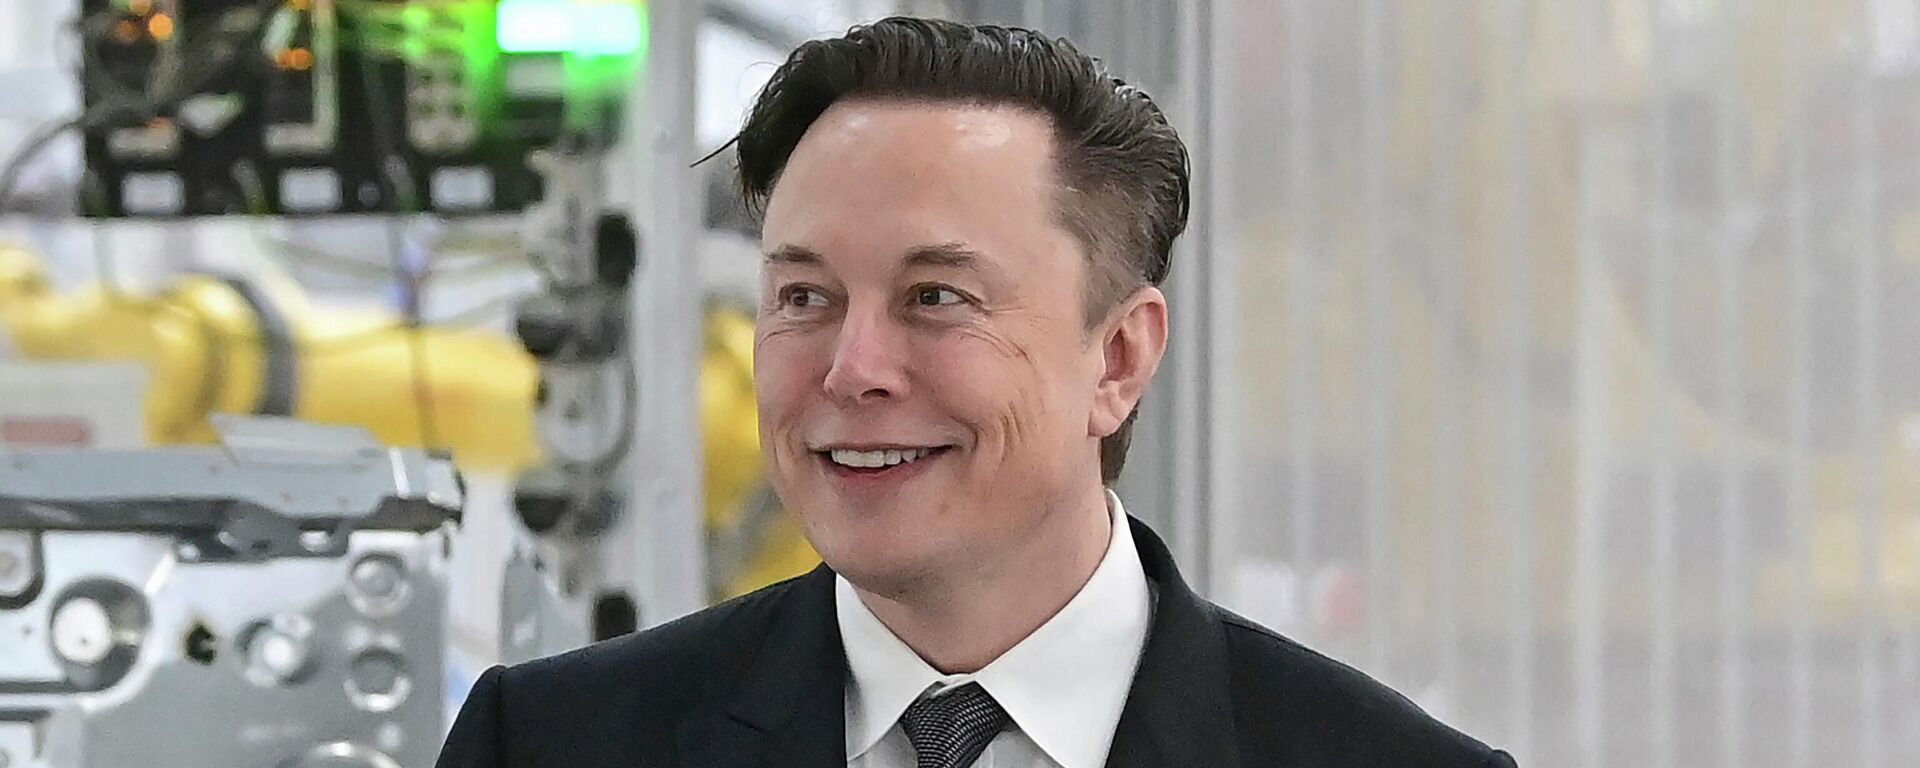 Tesla CEO Elon Musk attends the opening of the Tesla factory Berlin Brandenburg in Gruenheide, Germany, March 22, 2022. - Sputnik International, 1920, 29.12.2022